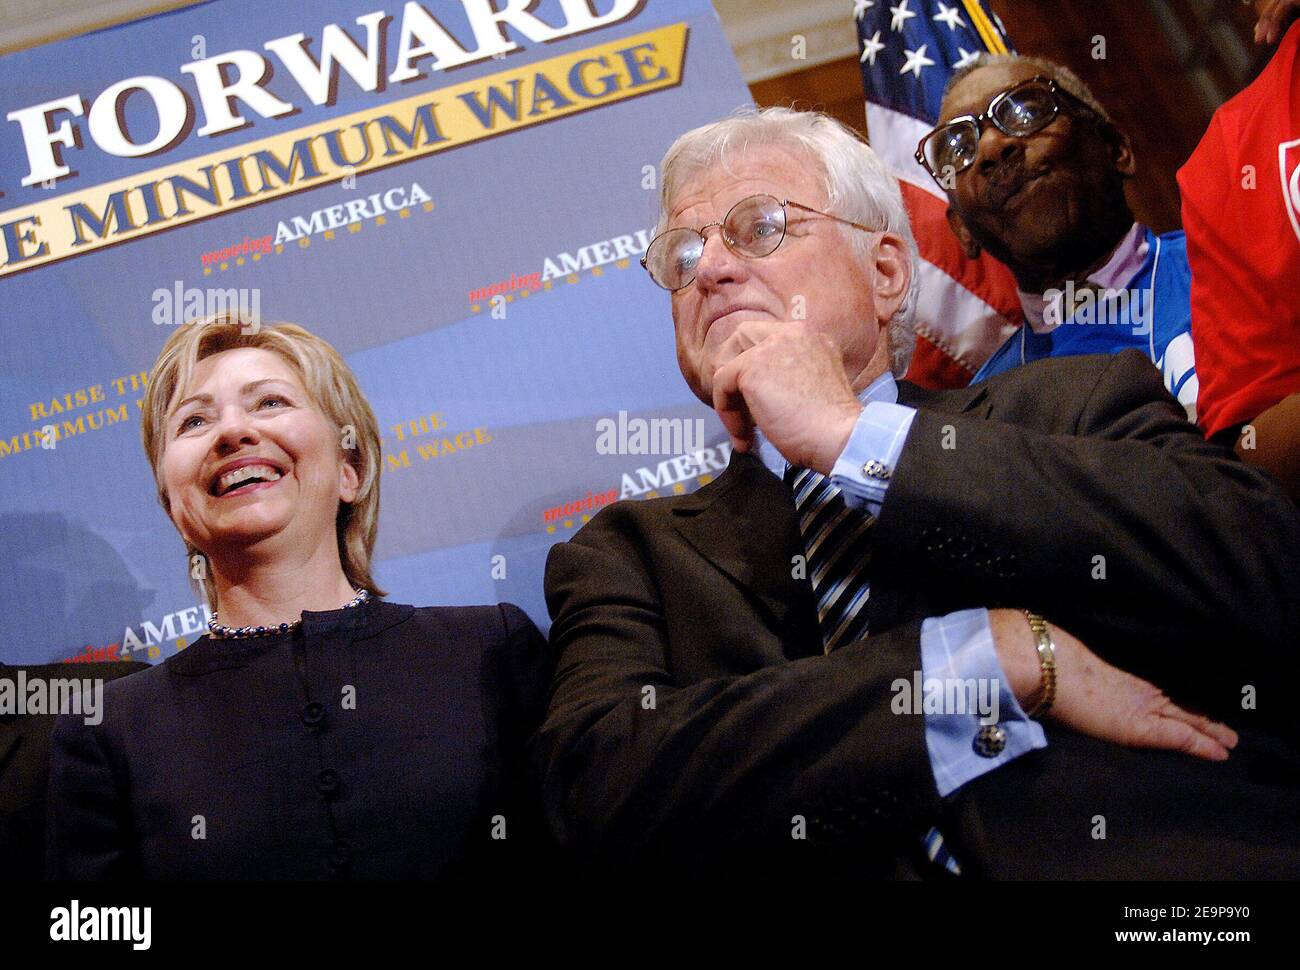 SENS. Edward Kennedy (D-Mass.) e Hillary Clinton (D-N.Y.) partecipano a una conferenza stampa a Washington, D.C, novembre 16 2006, sulle iniziative relative al salario minimo. Foto di Olivier Douliery/ABACAPRESS.COM Foto Stock